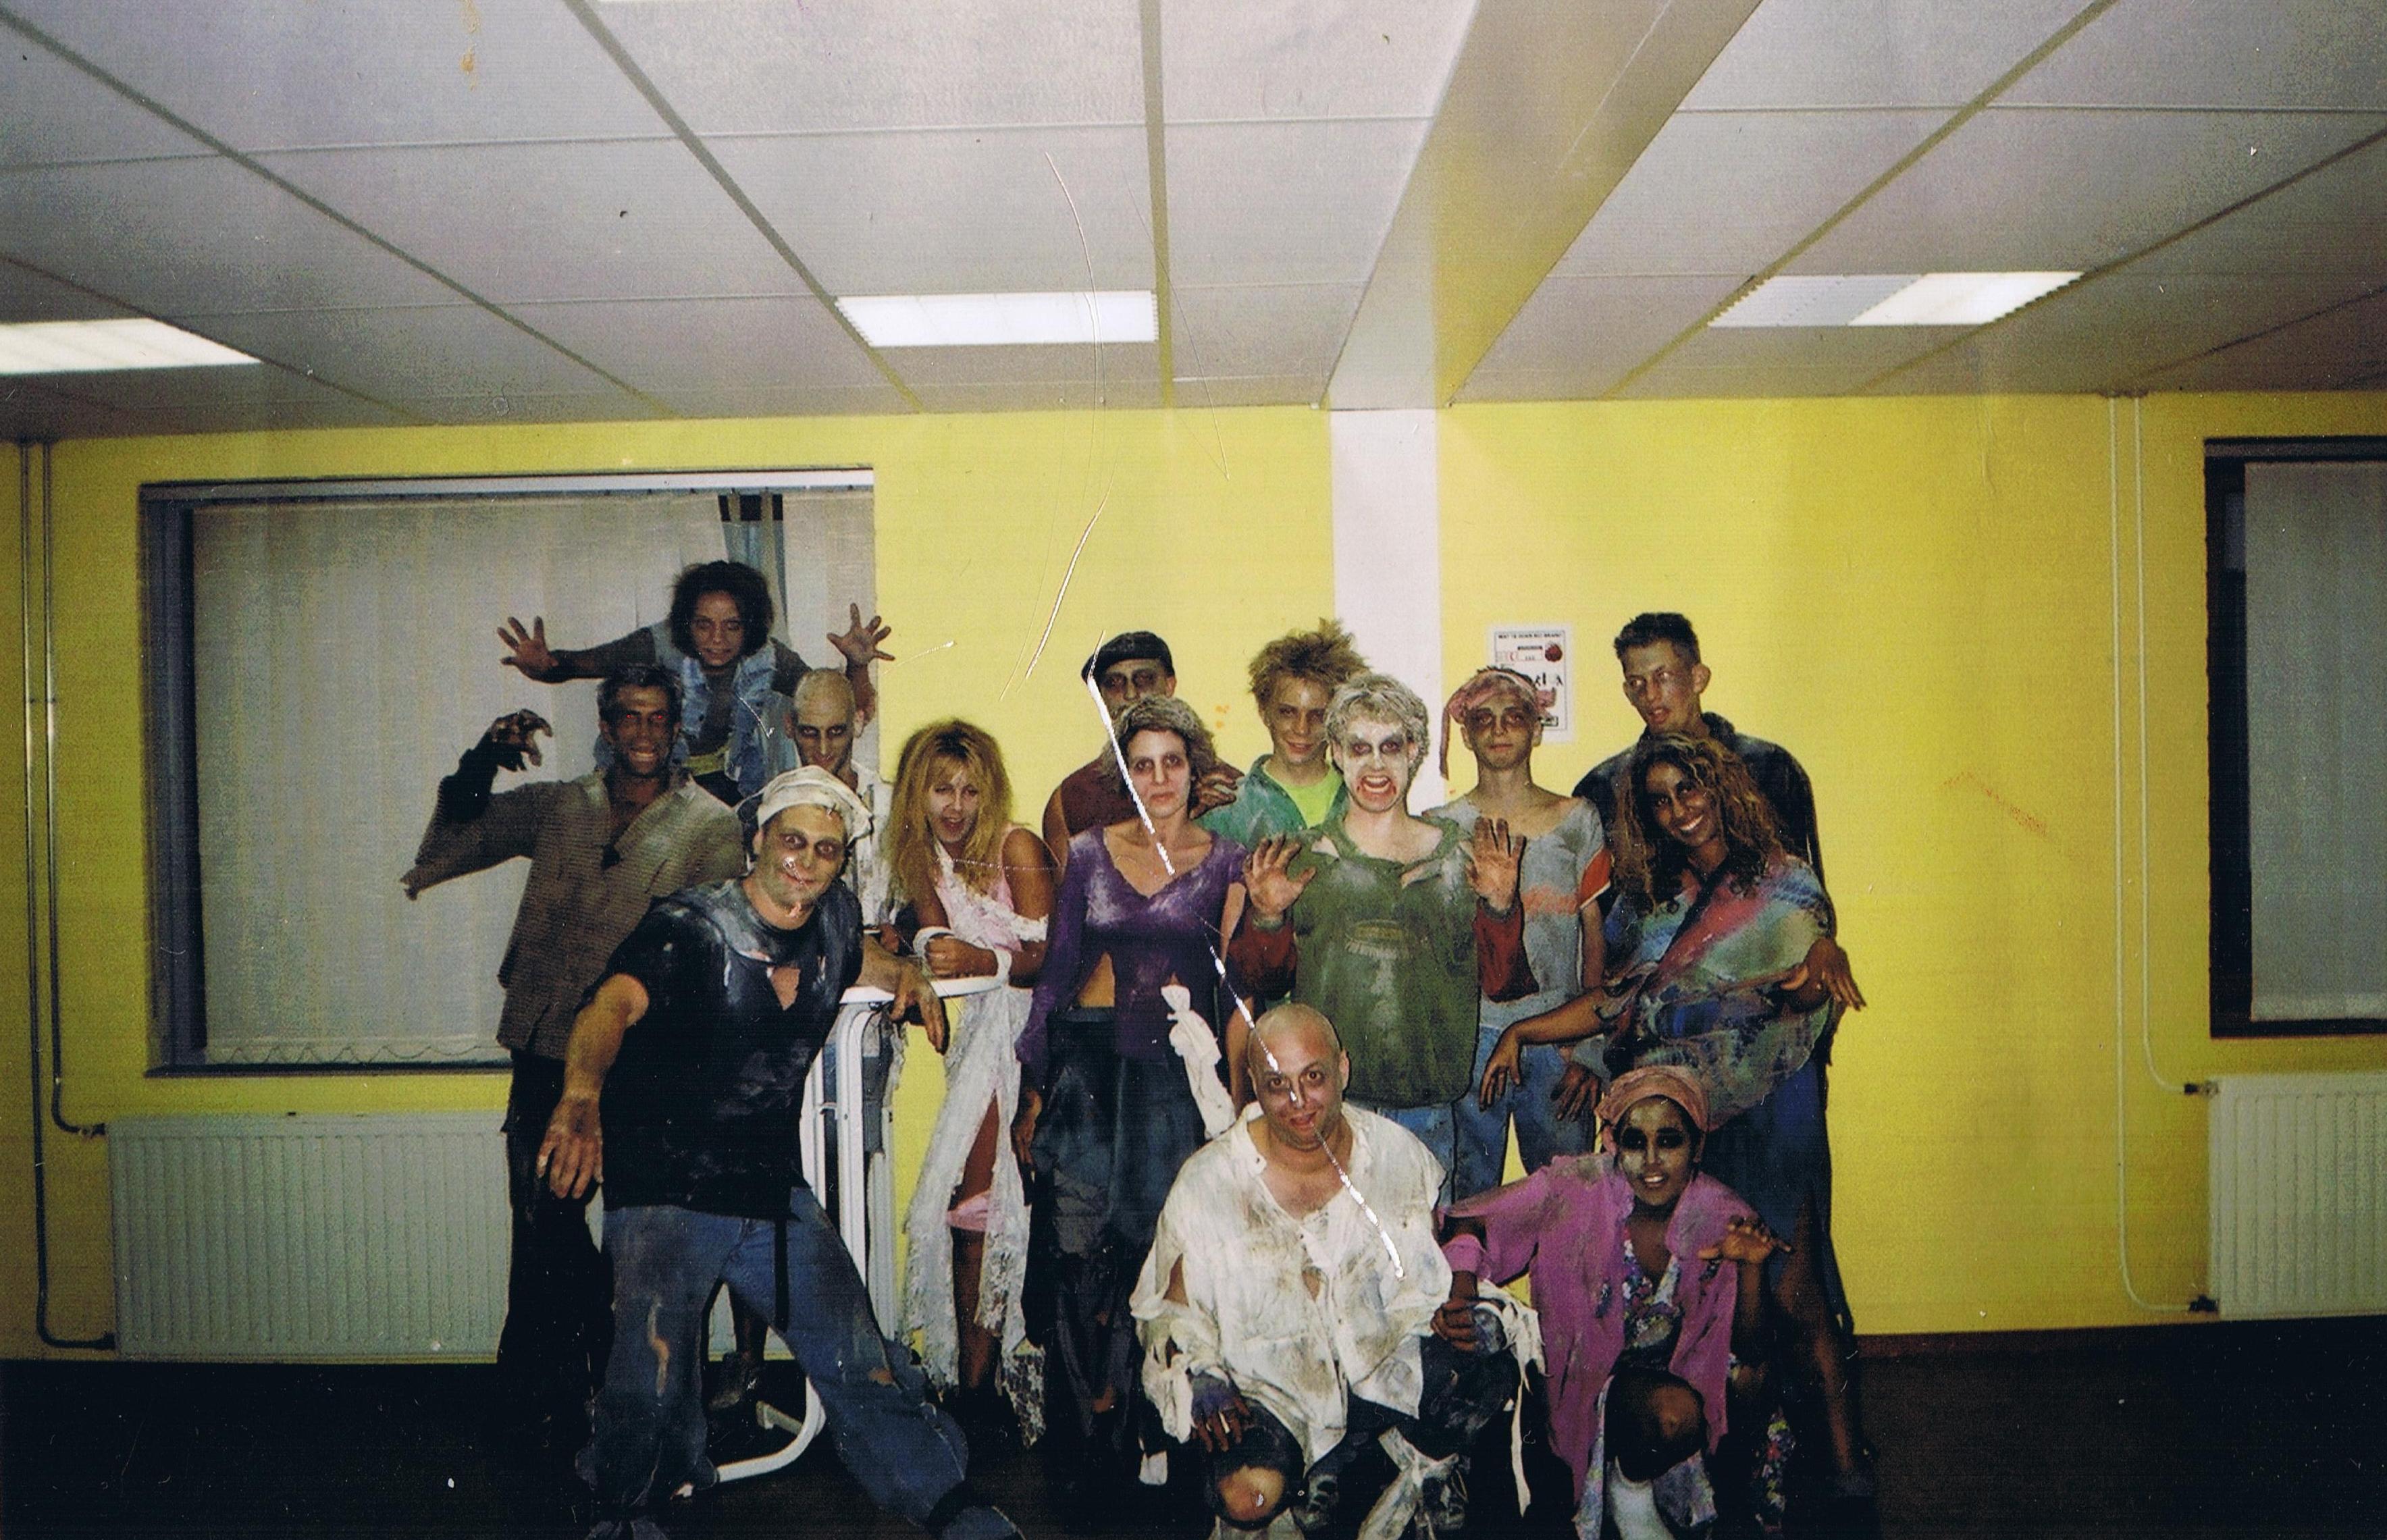 Sam Sam comedy series 2003. Episode: Buffys en bocheltjen. Zombie group photo.